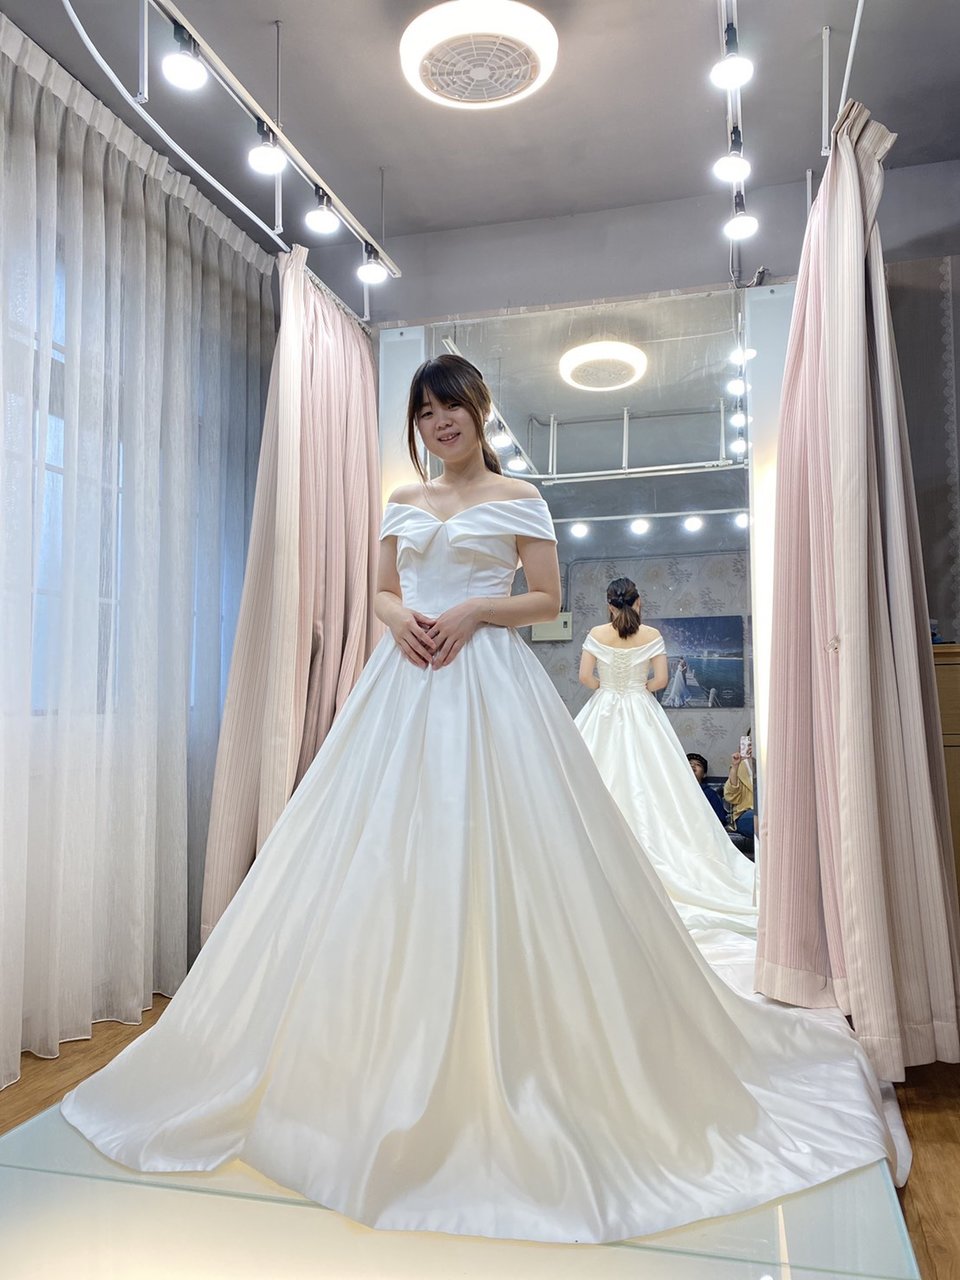 視覺流感婚紗攝影SJLG-wedding,挑婚紗攝影禮服